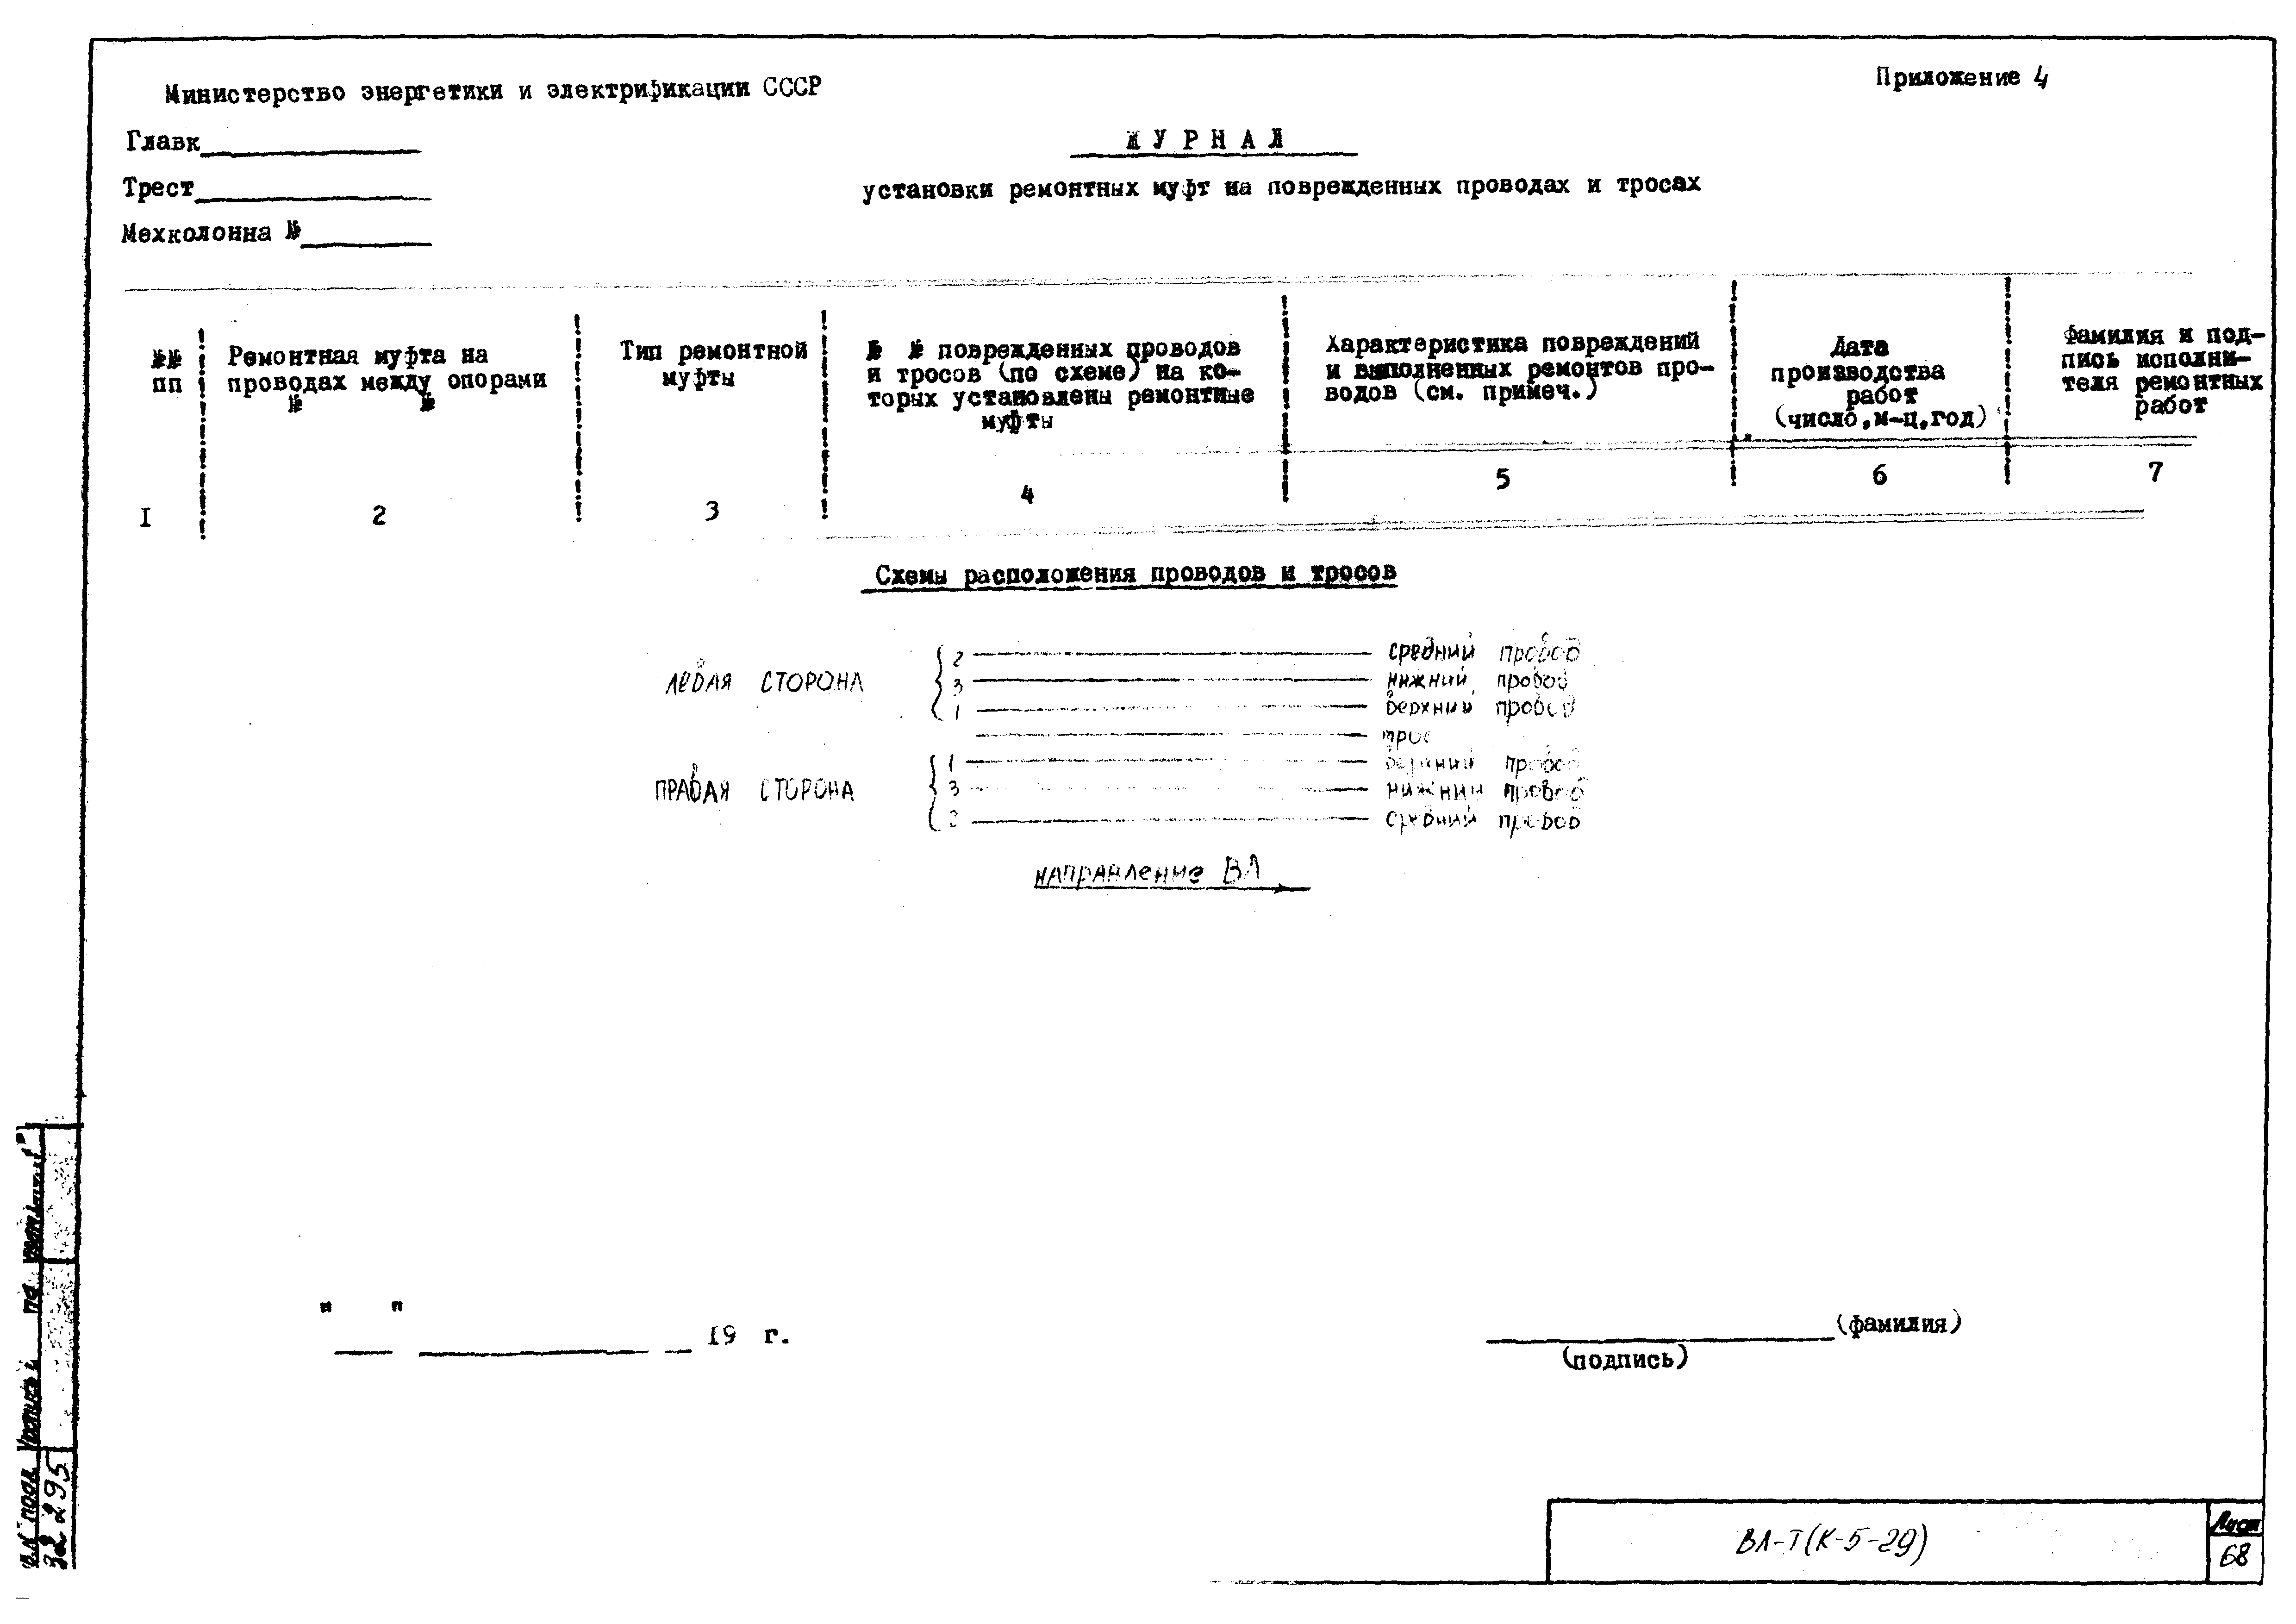 Технологическая карта К-5-29-5